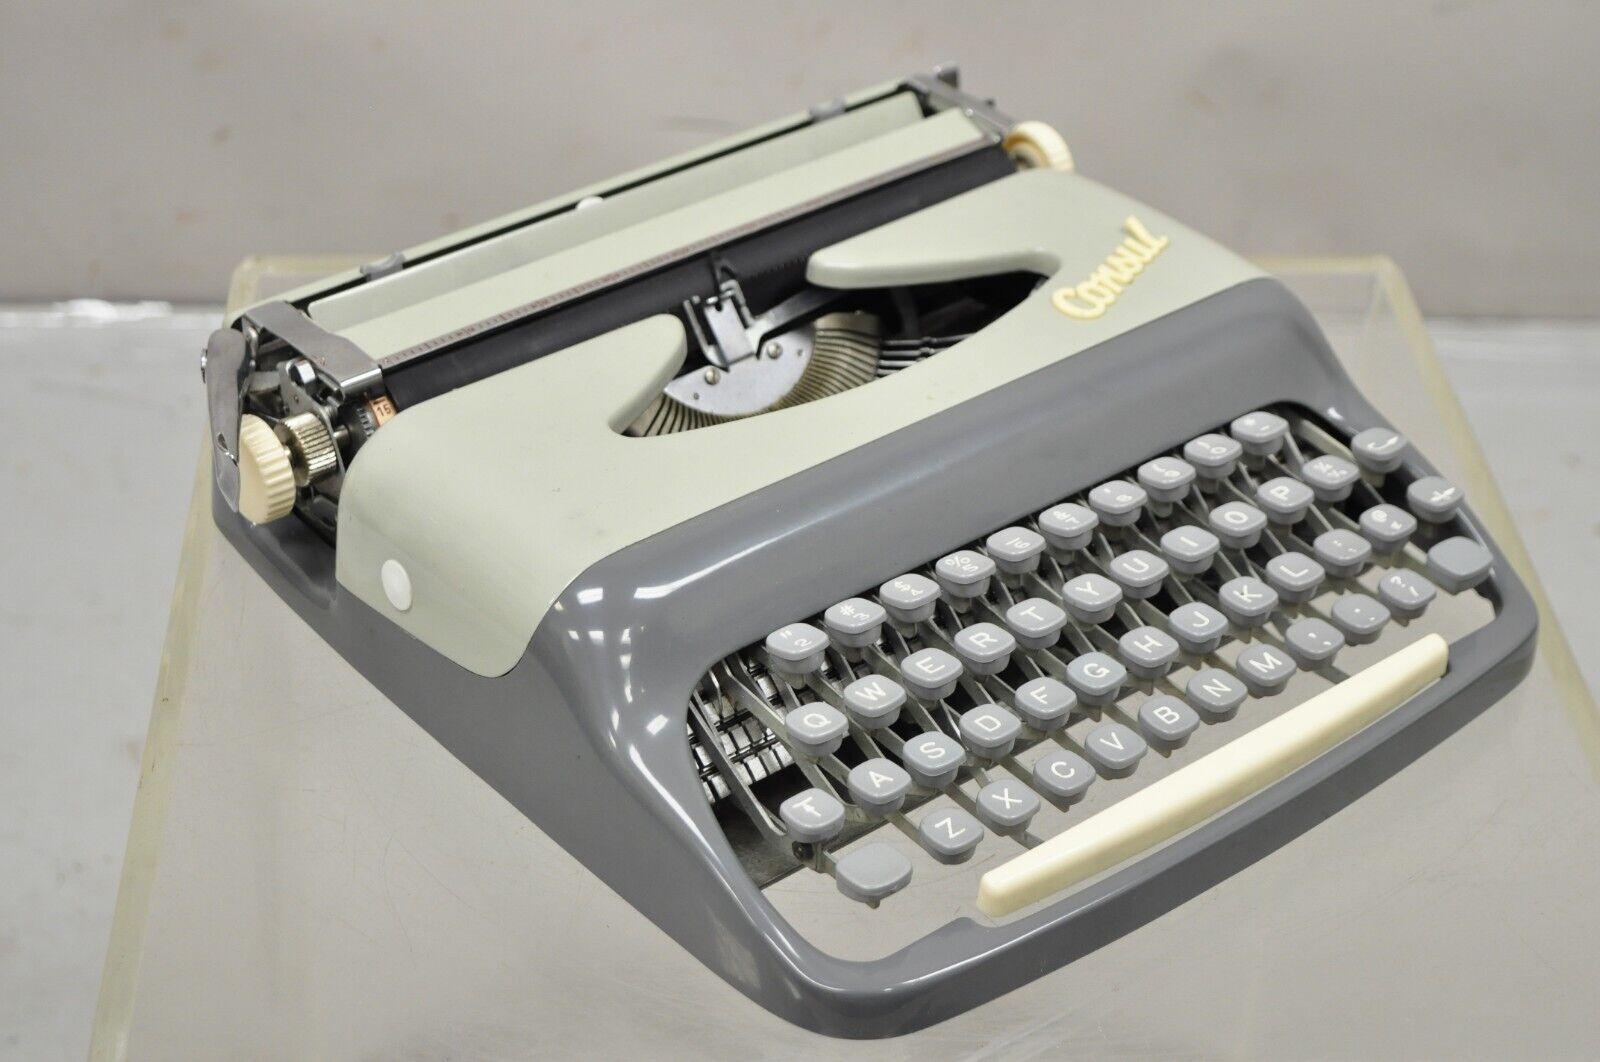 portable royal typewriter